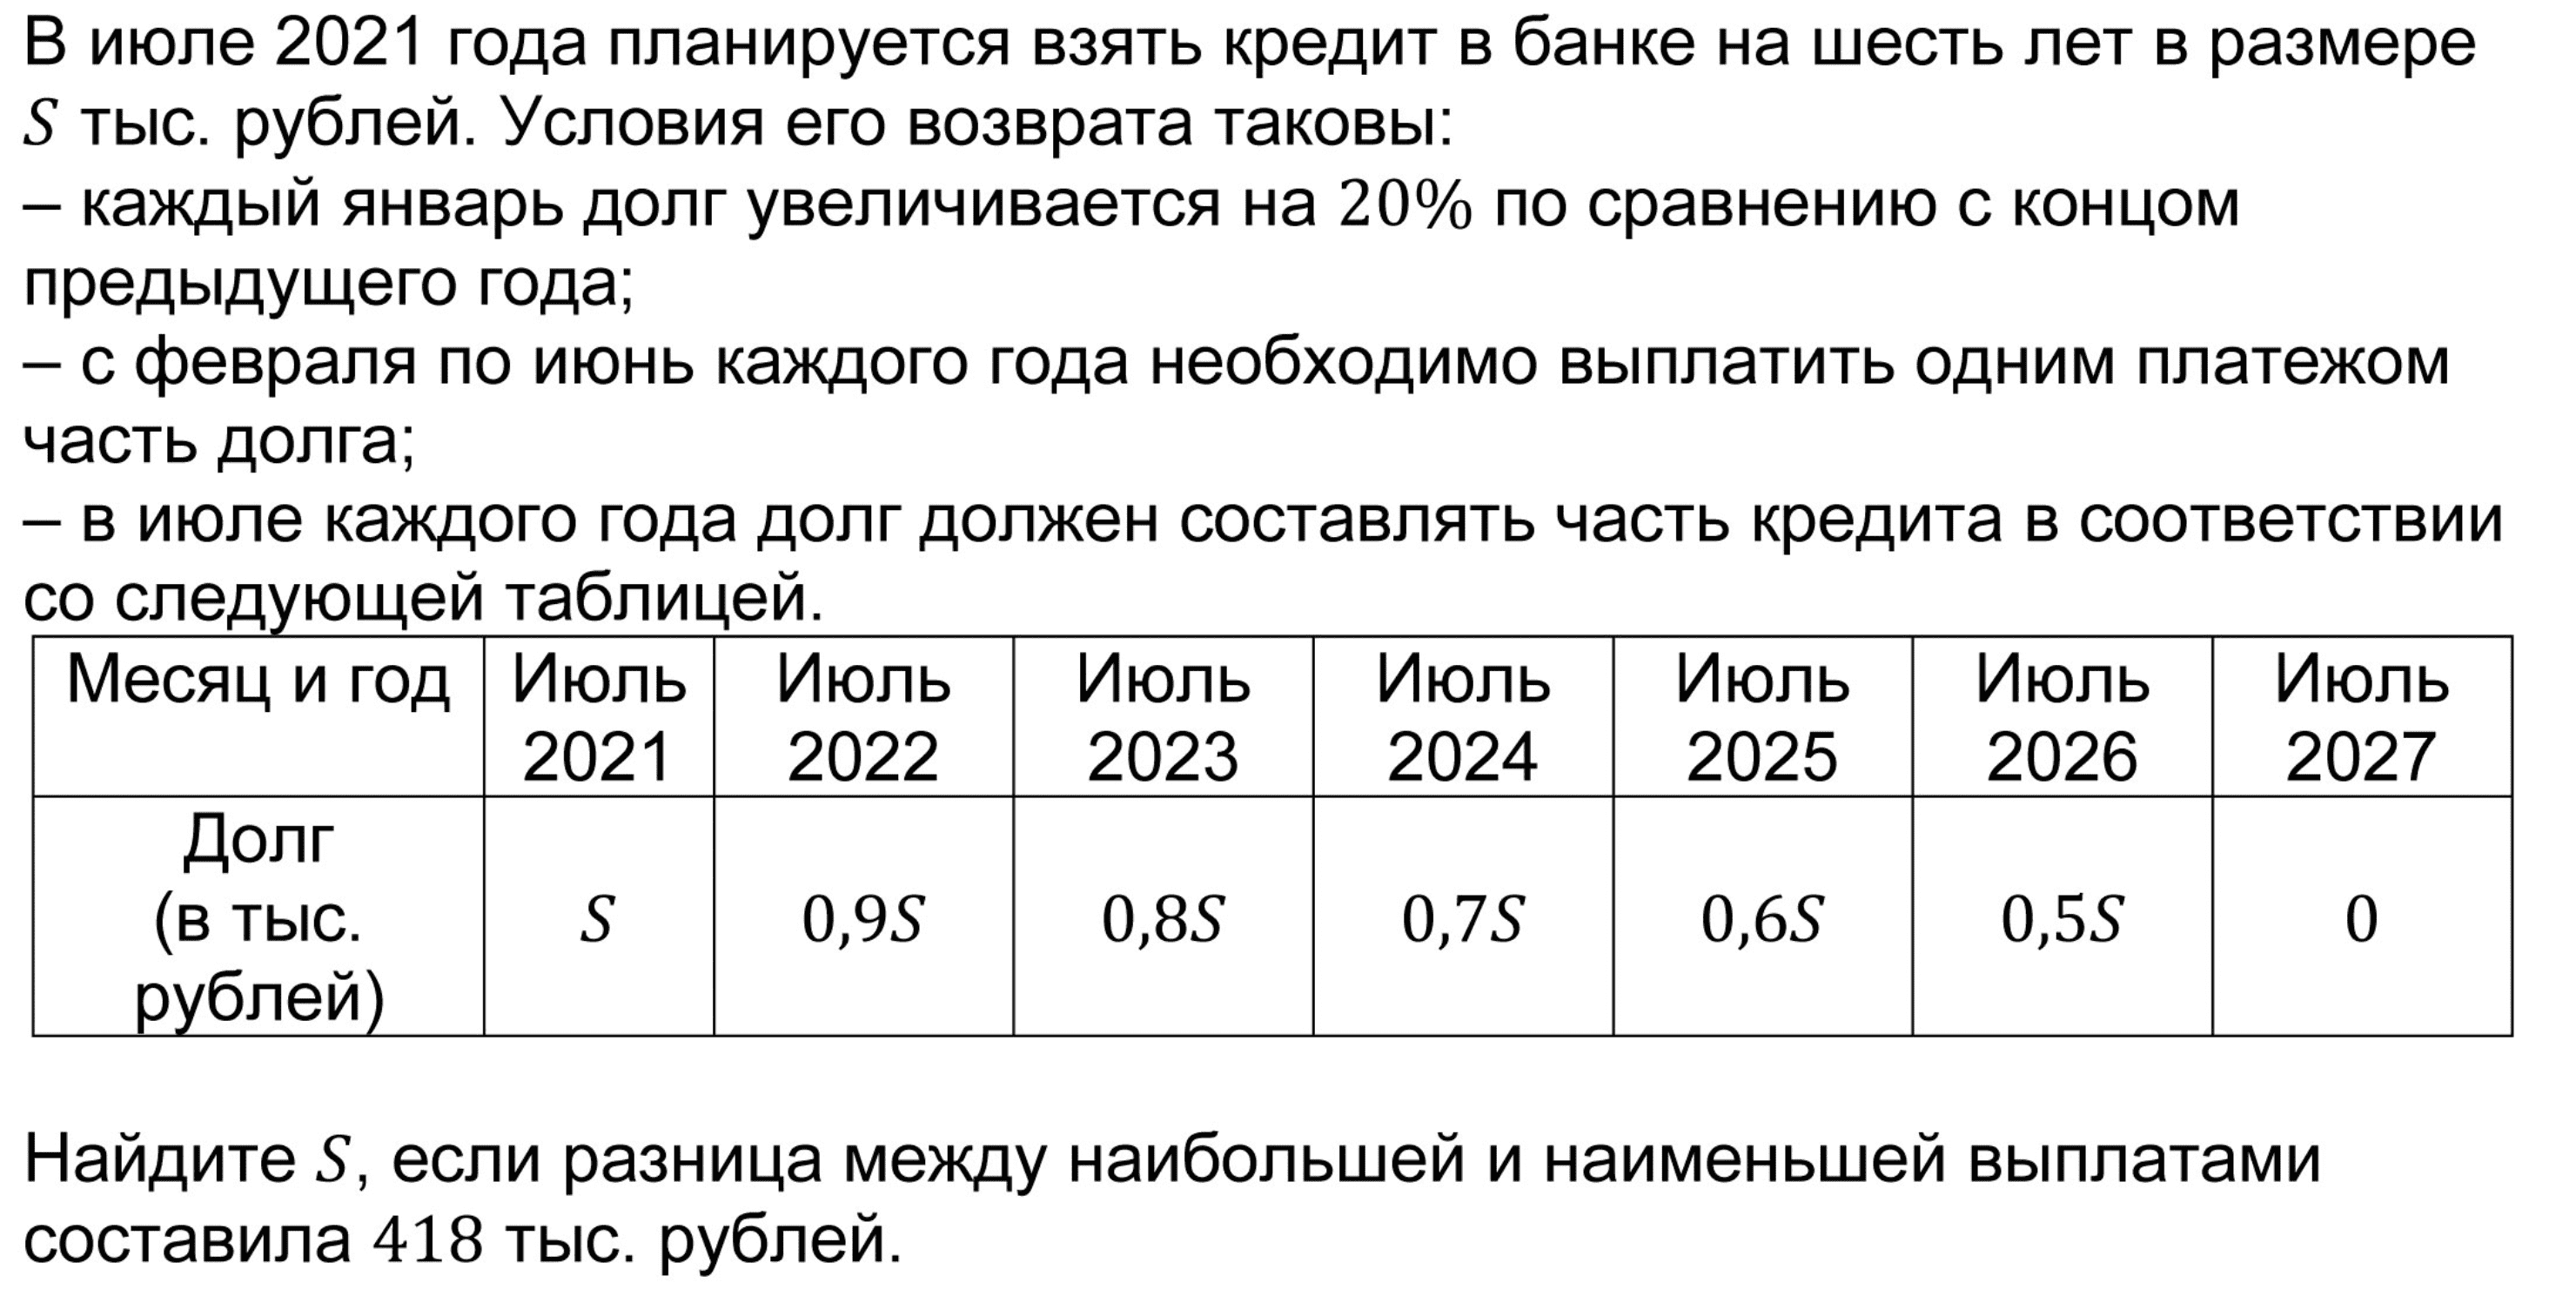 Руб по сравнению с прошлым. В июле 2026 года планируется. В июле 2025 года планируется. В июле 2026 году в банке взяли кредит. В июле 2026 планируется взять кредит.